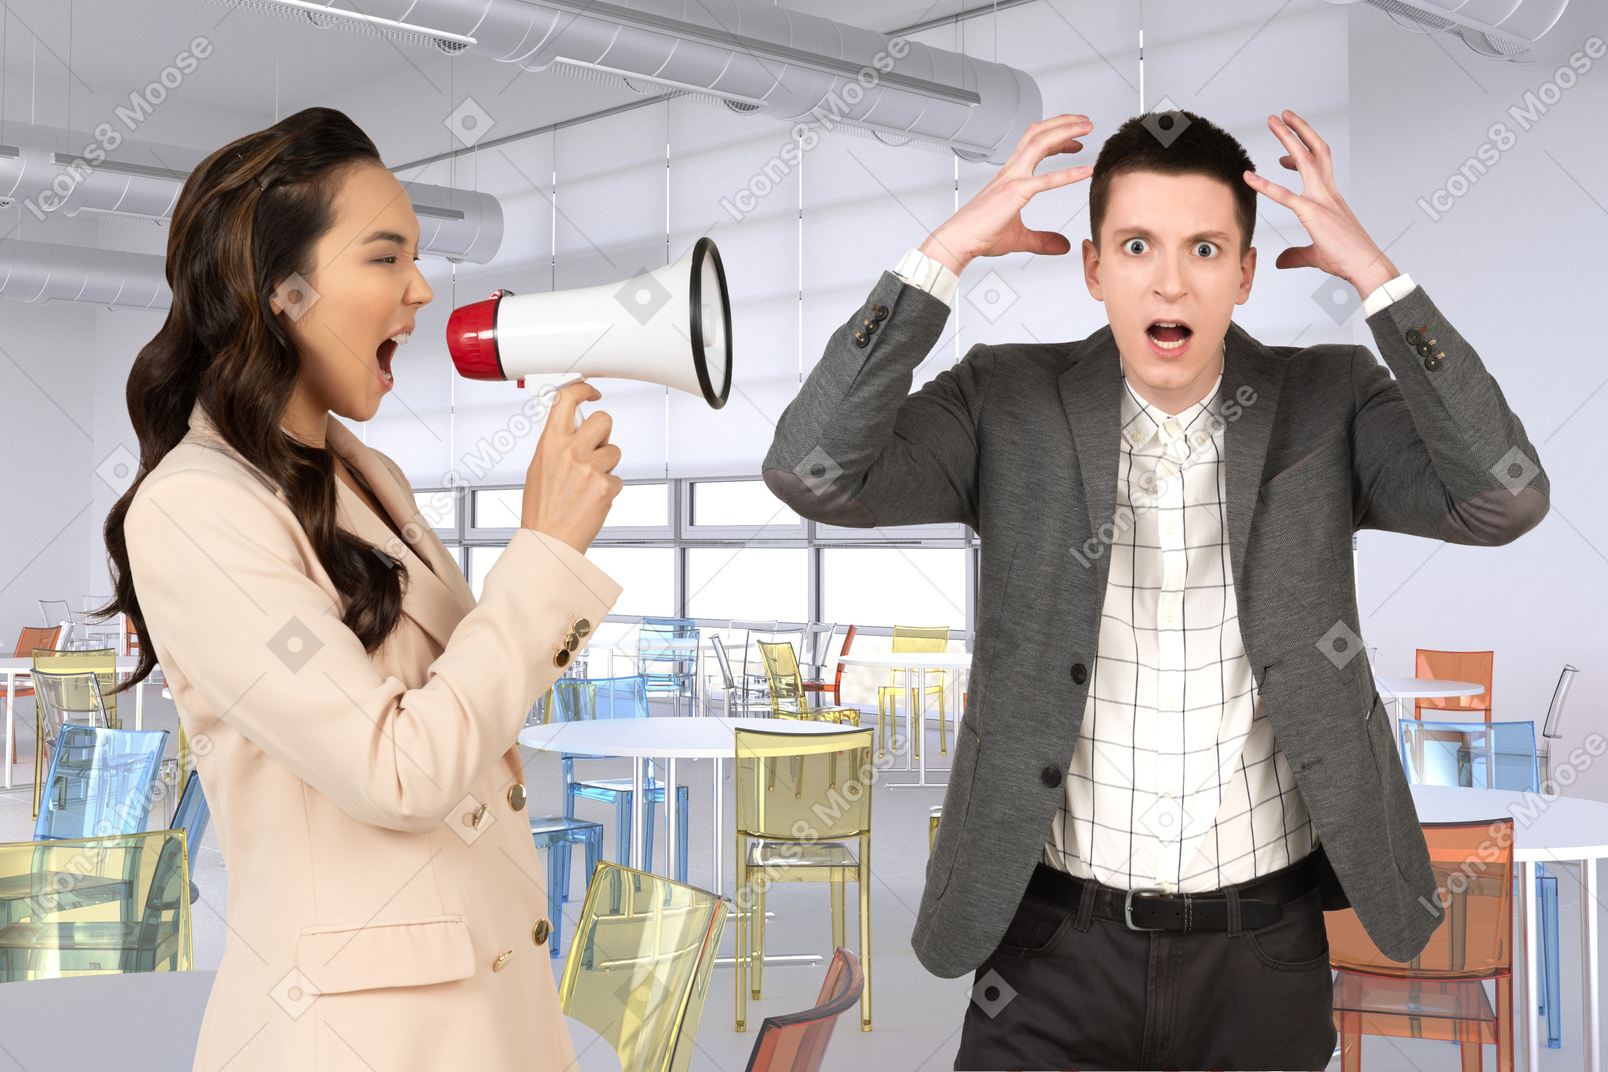 Woman shouting through megaphone at stressed man